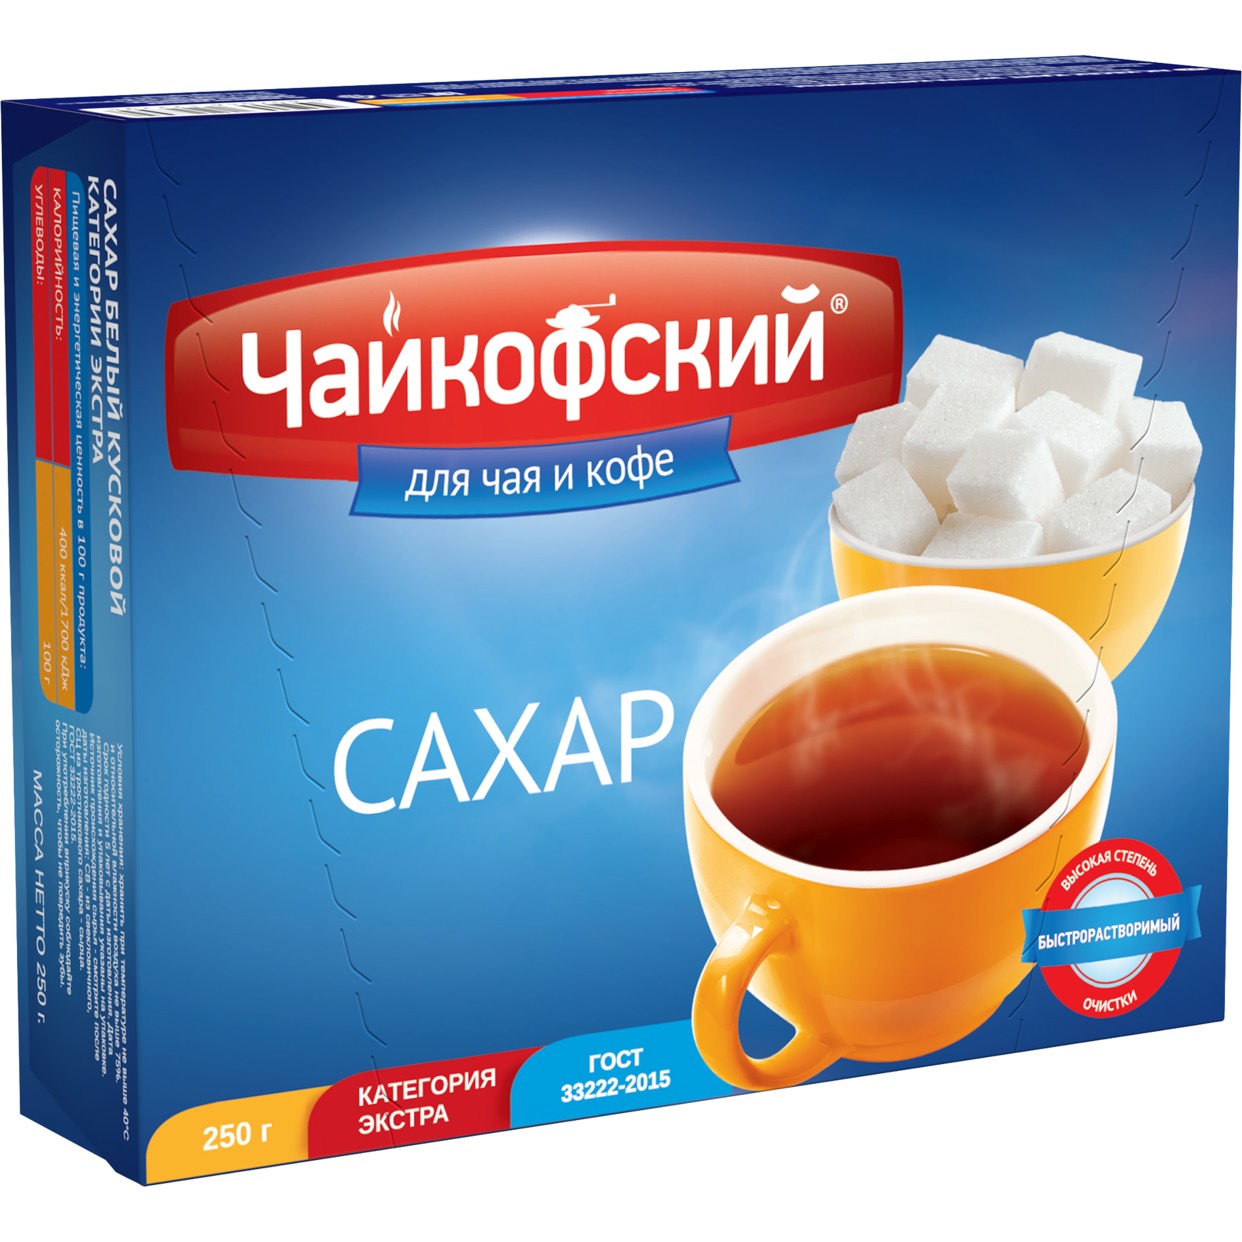 Сахар Чайкофский для чая и кофе рафинад быстрорастворимый 250 г по акции в Пятерочке